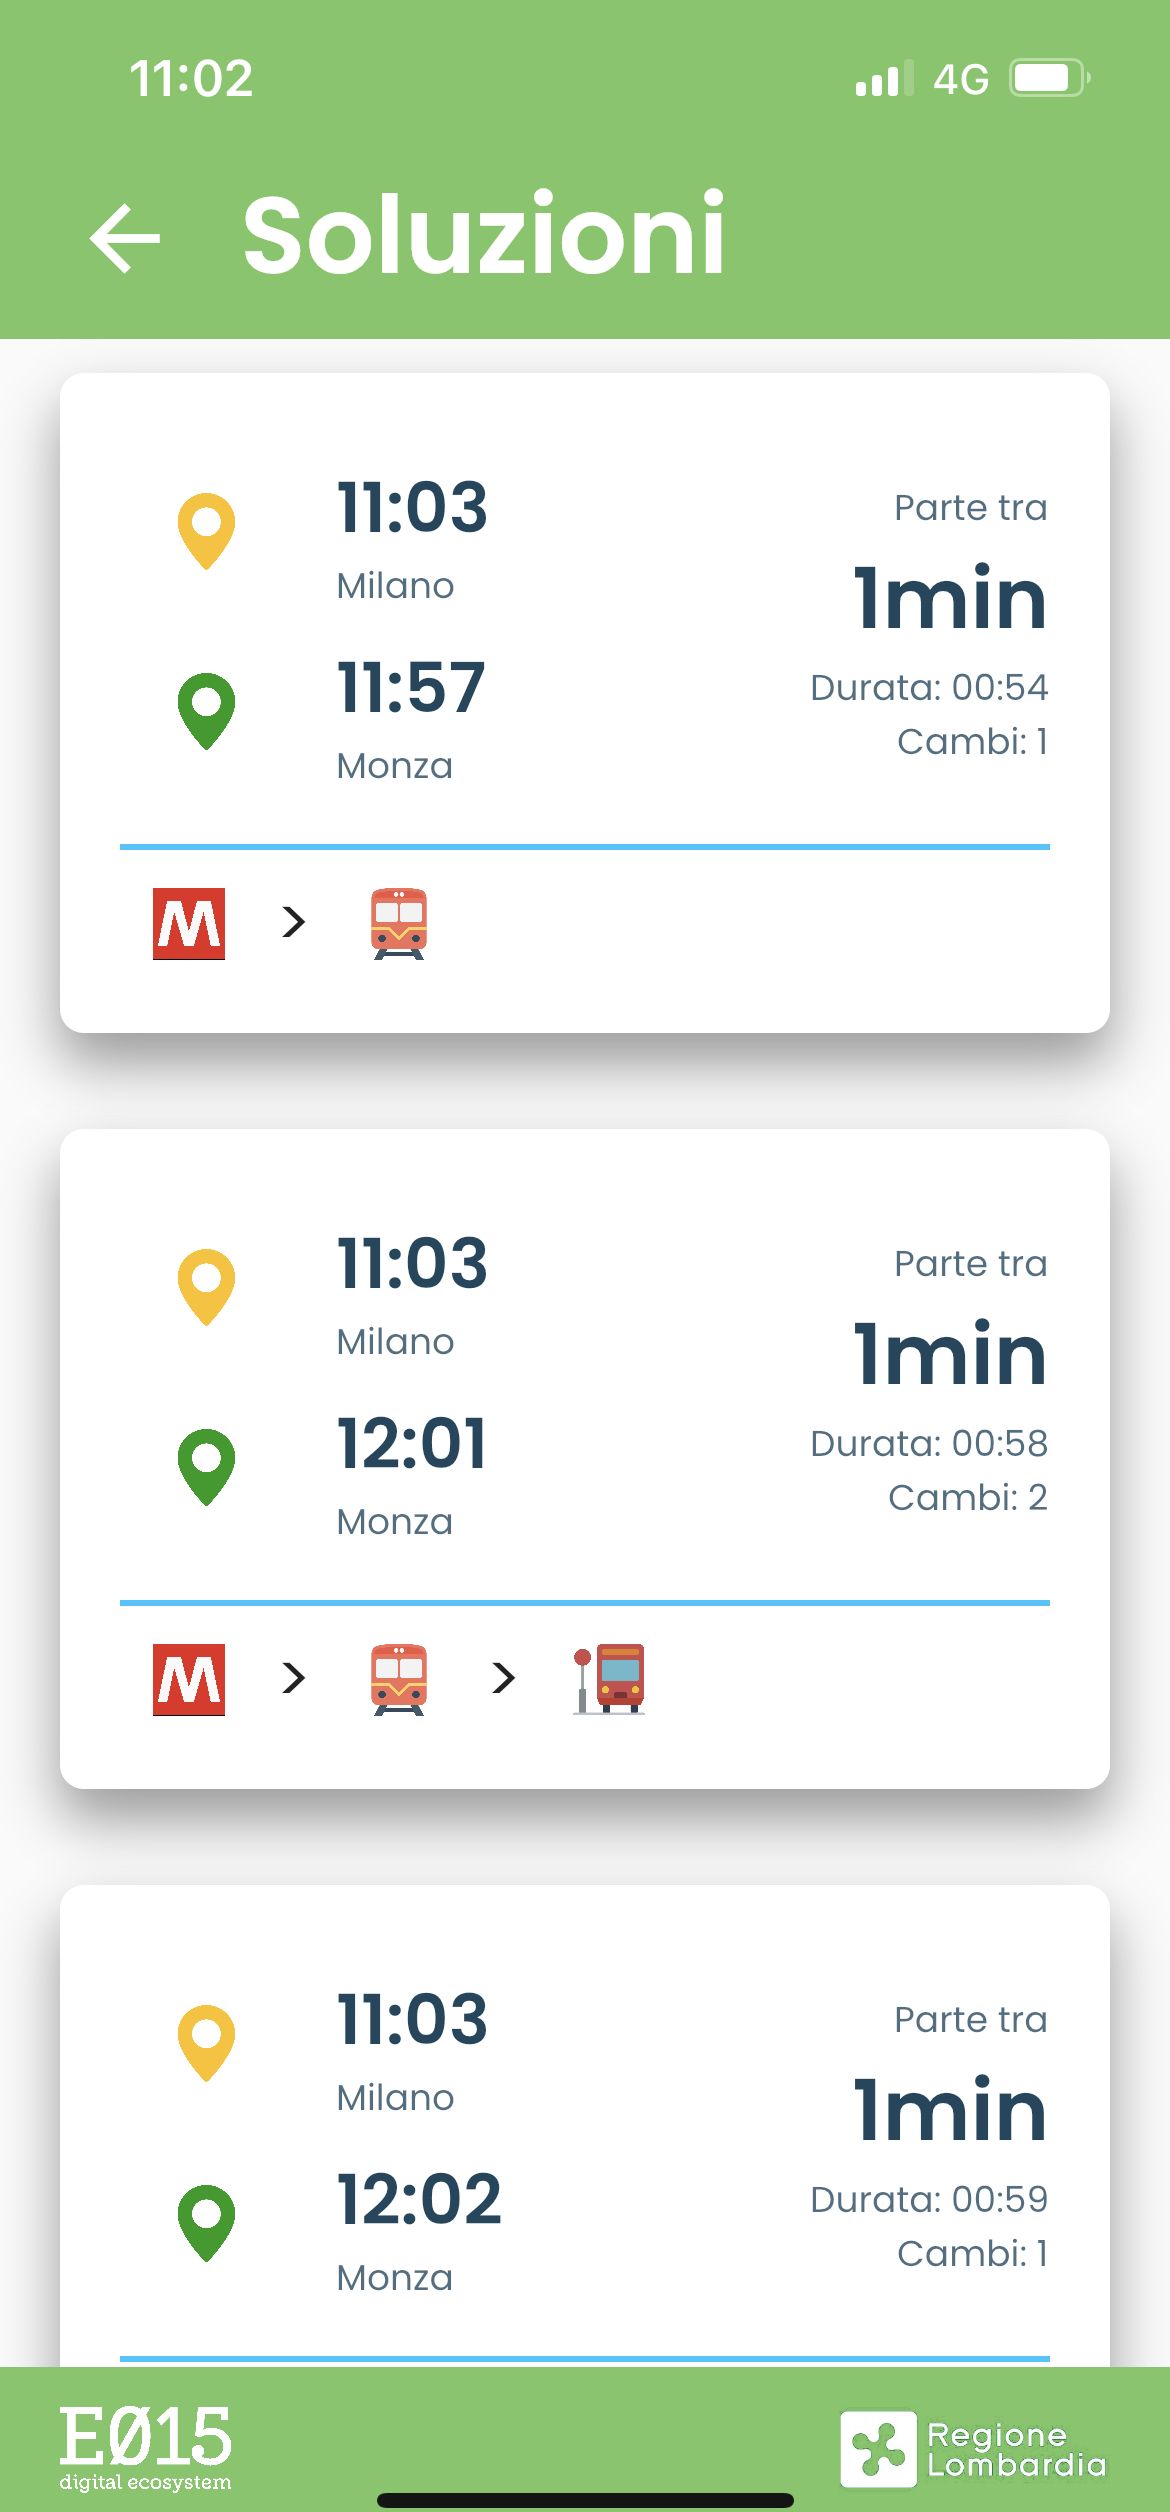 DaQui - Trasporto pubblico Lombardia screenshot 1